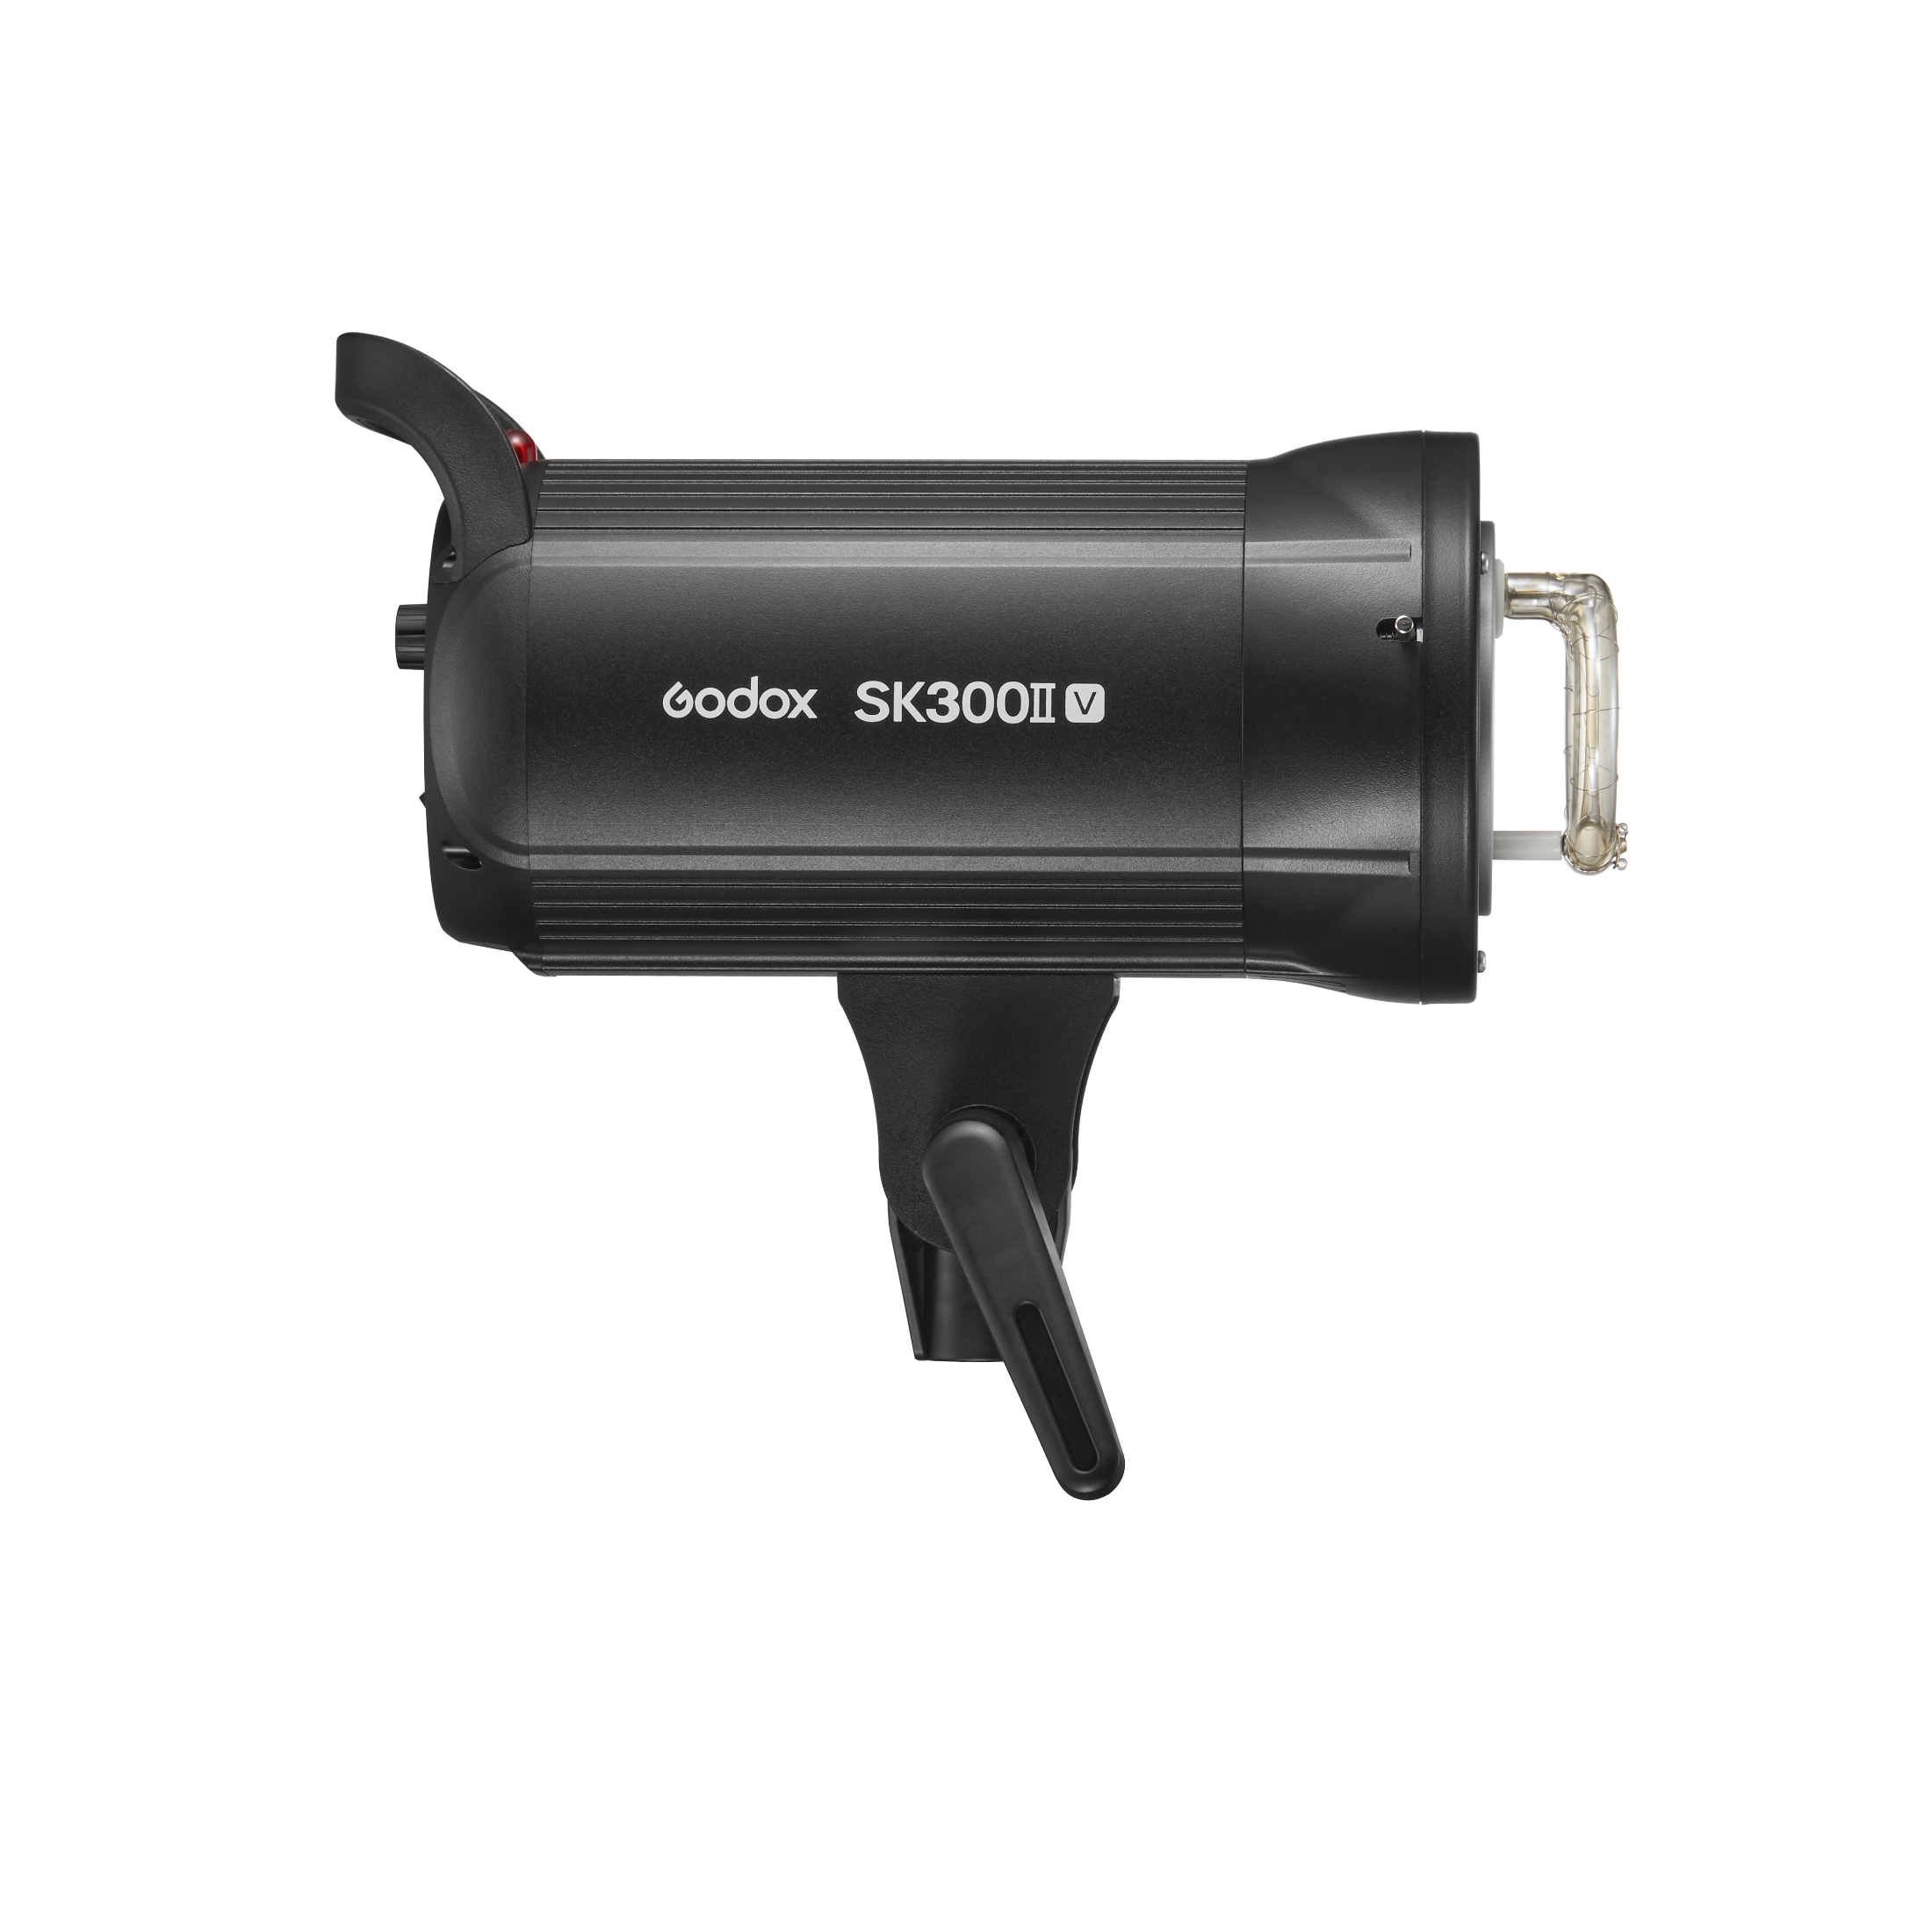    Godox SK300II-V   Ultra-mart